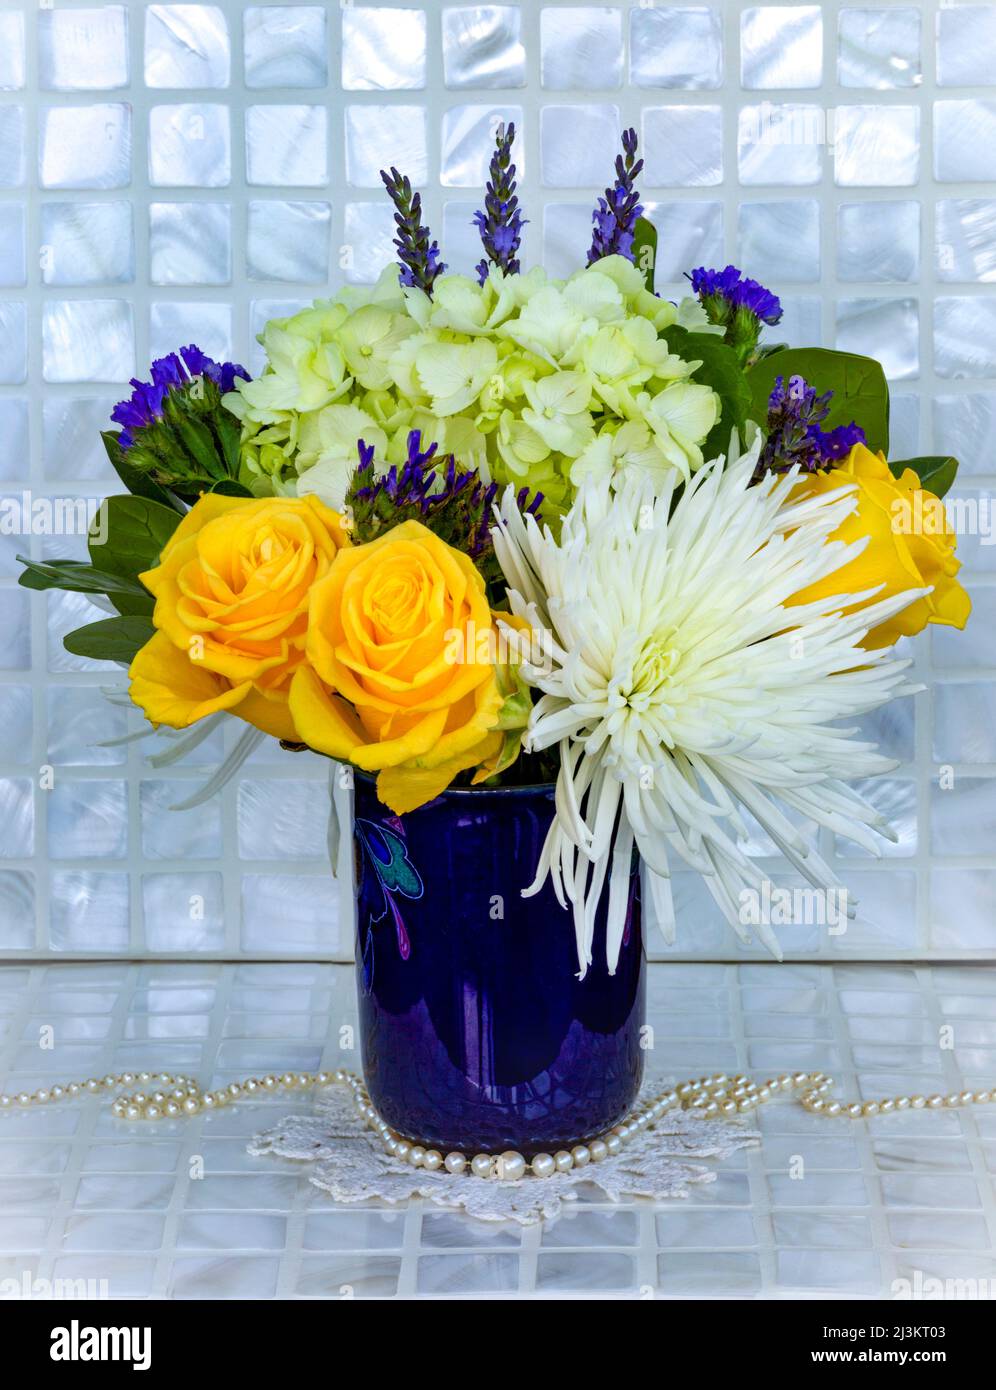 Bouquet de fleurs coupées fraîches dans un vase bleu avec un Doily crocheté et des perles, une variété de fleurs dans l'arrangement, y compris des roses jaunes et W... Banque D'Images